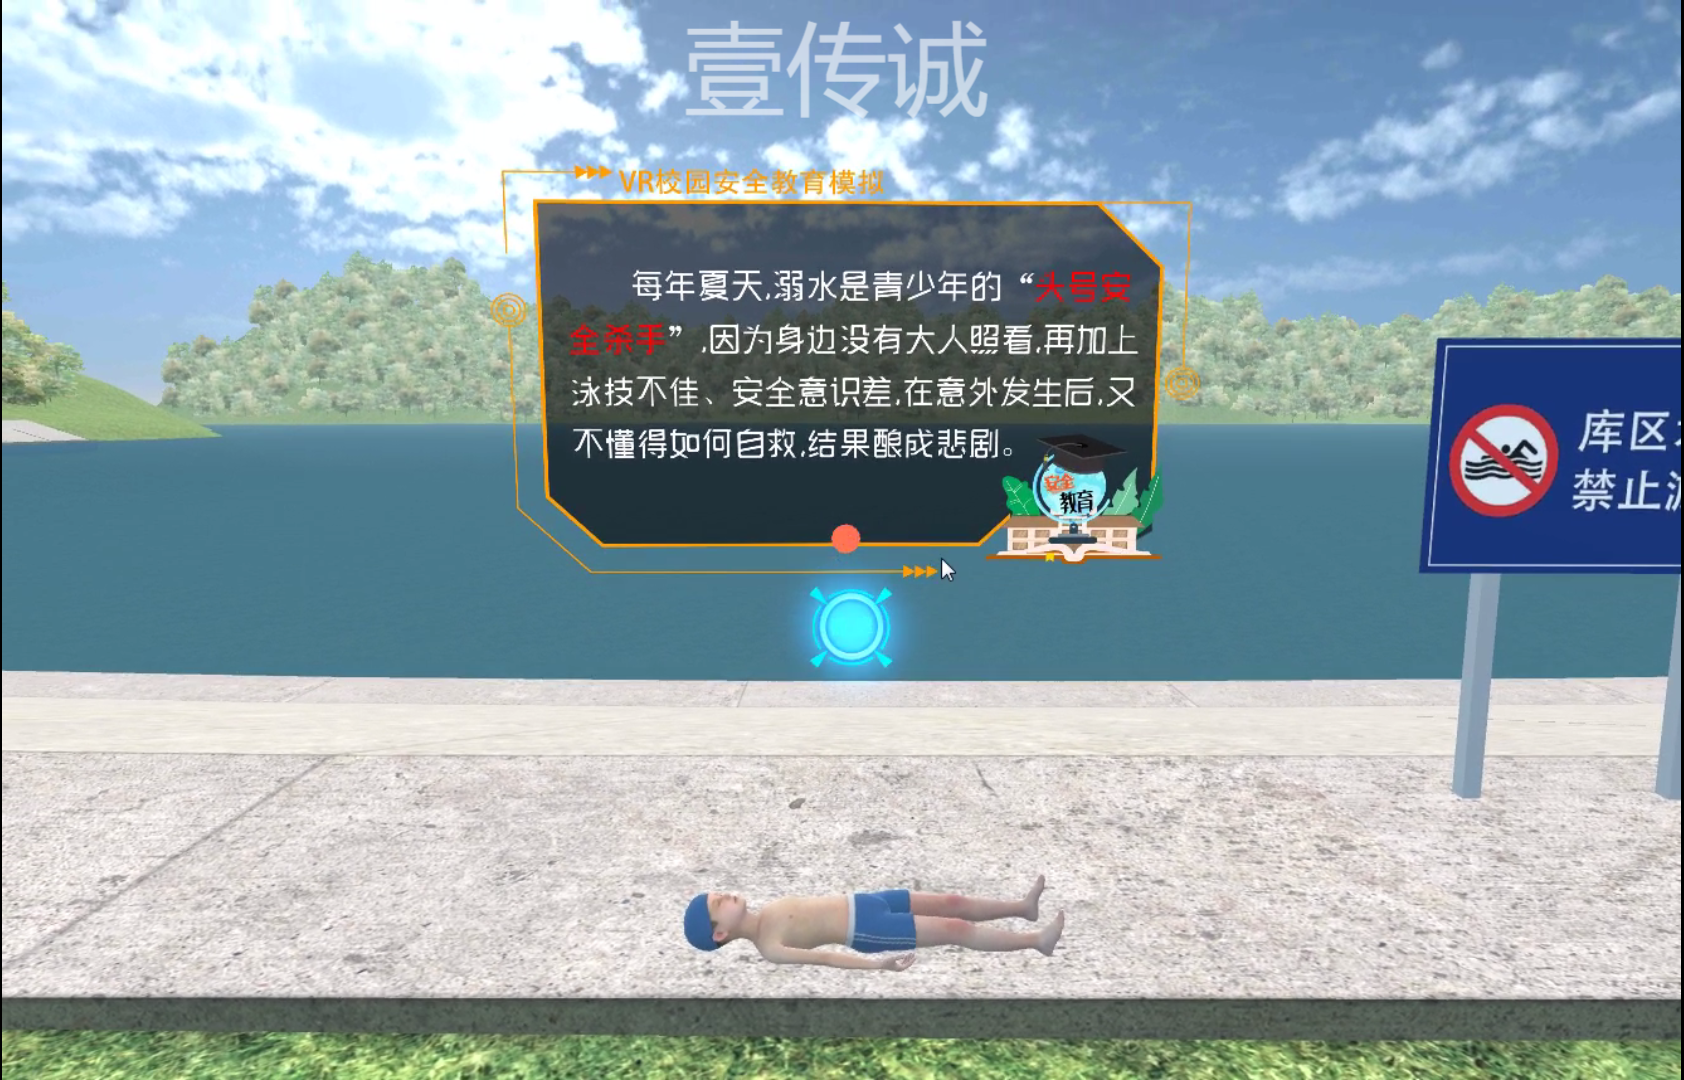 VR防溺水教育